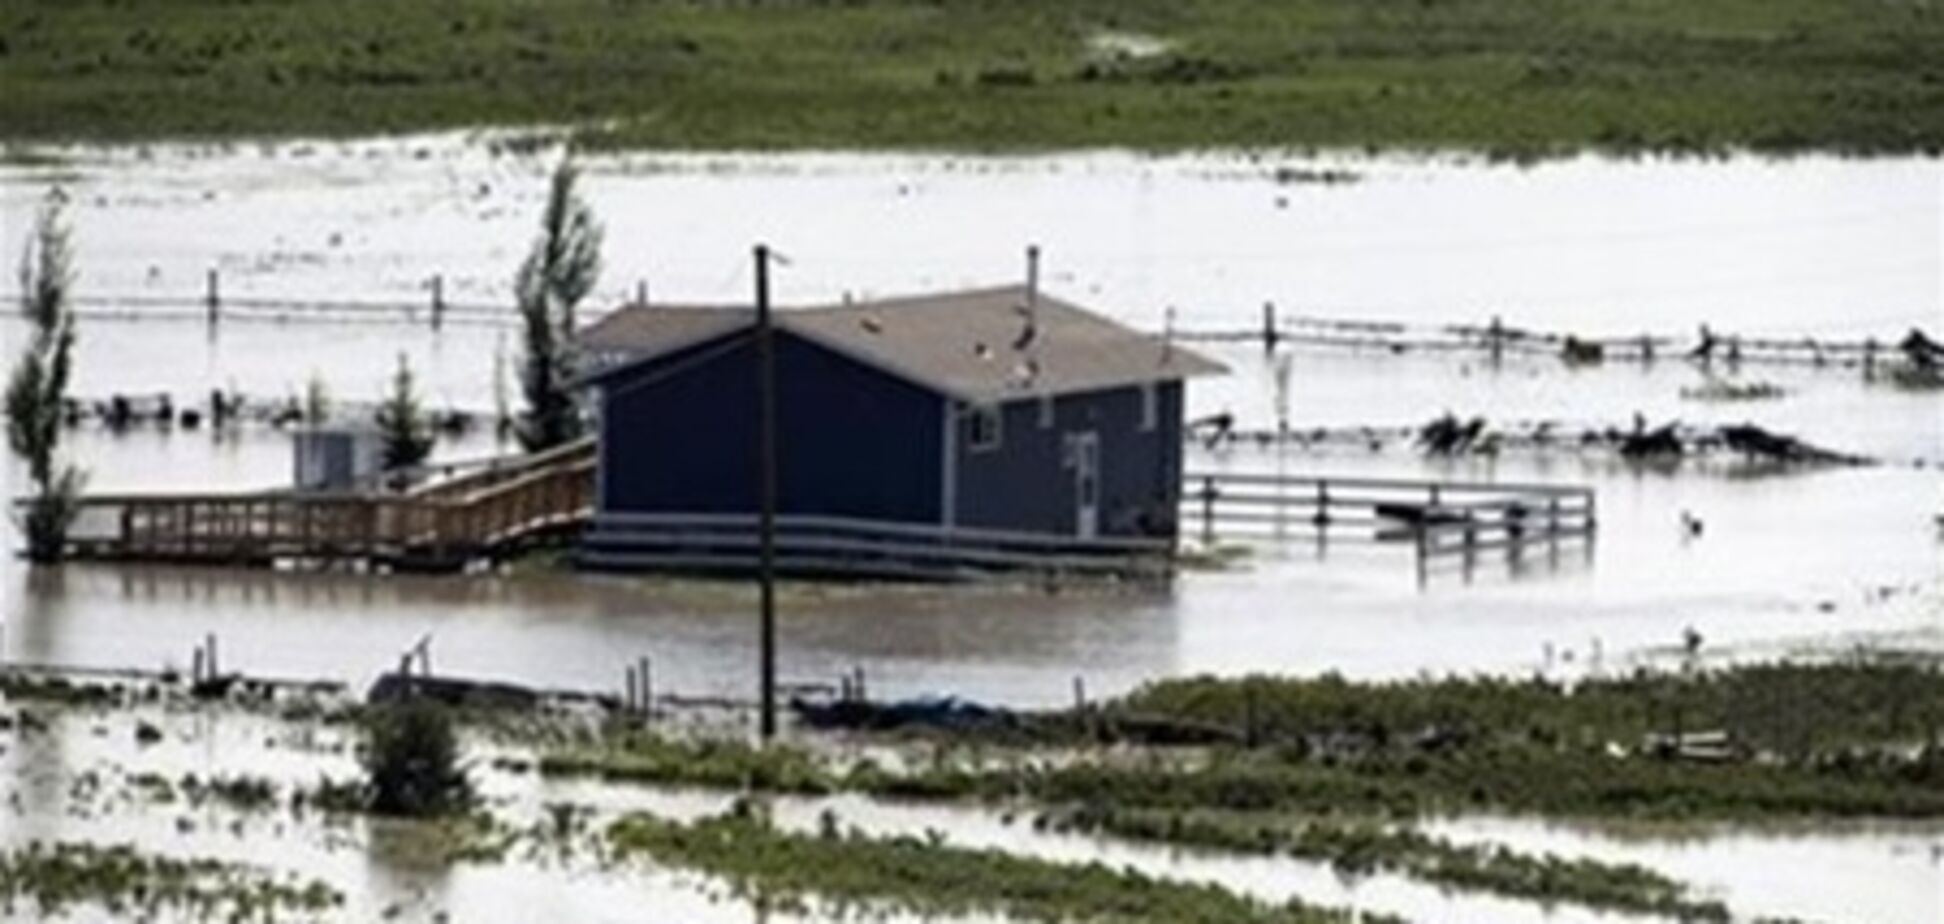 Наводнение в Канаде достигло пика